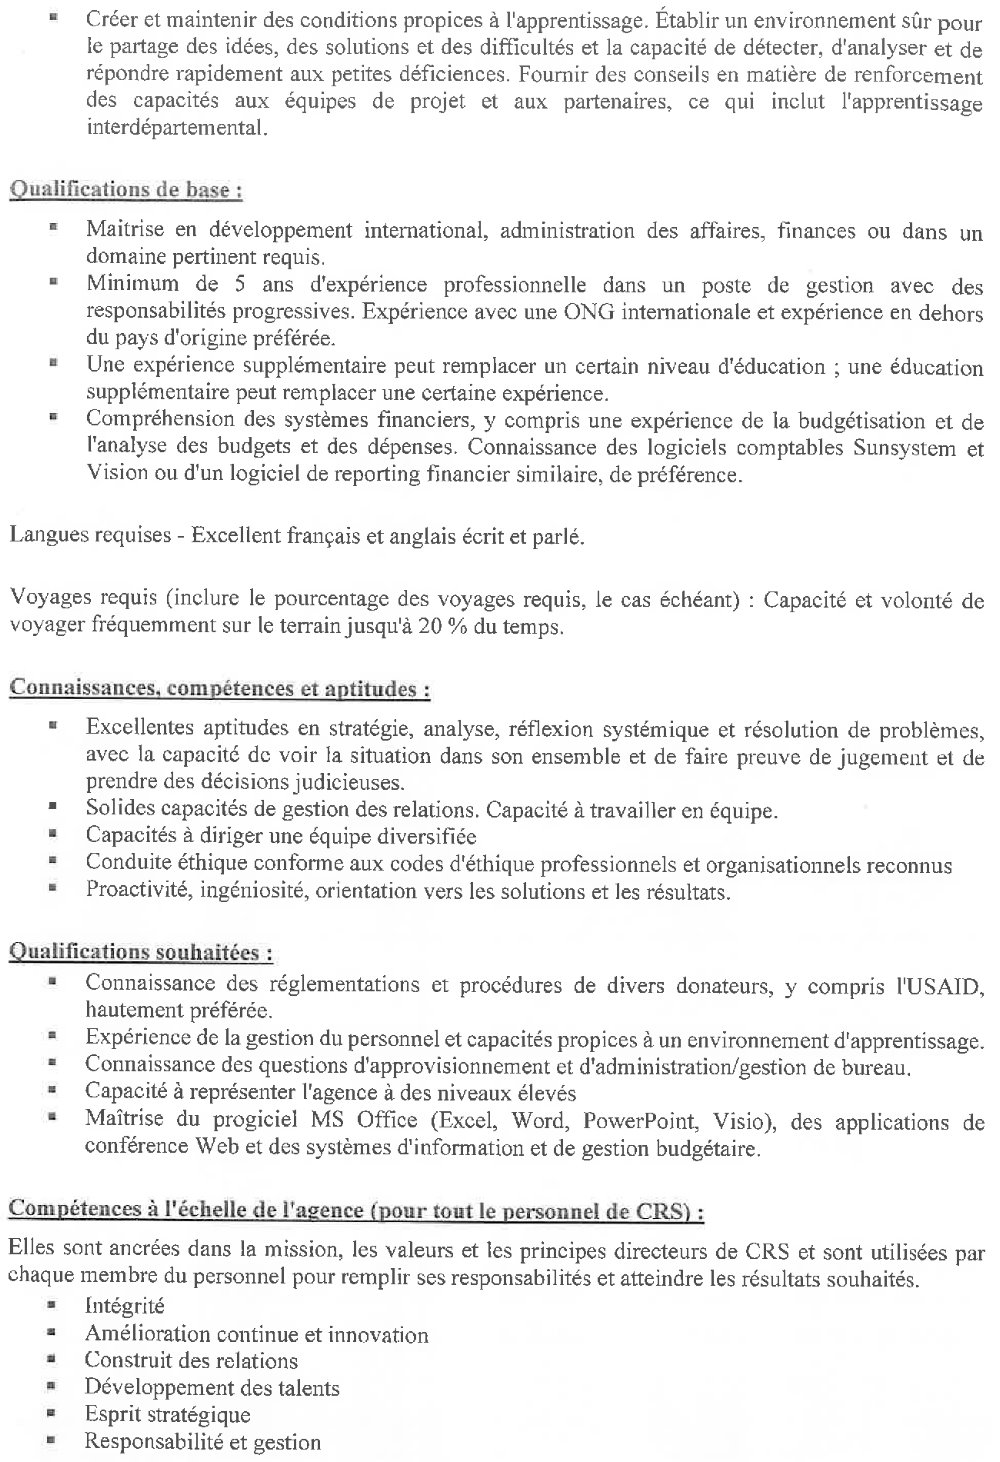 Appel à candidature pour le recrutement d’un(e) Directeur (trice) des Opérations pour CRS Guinée page 3 